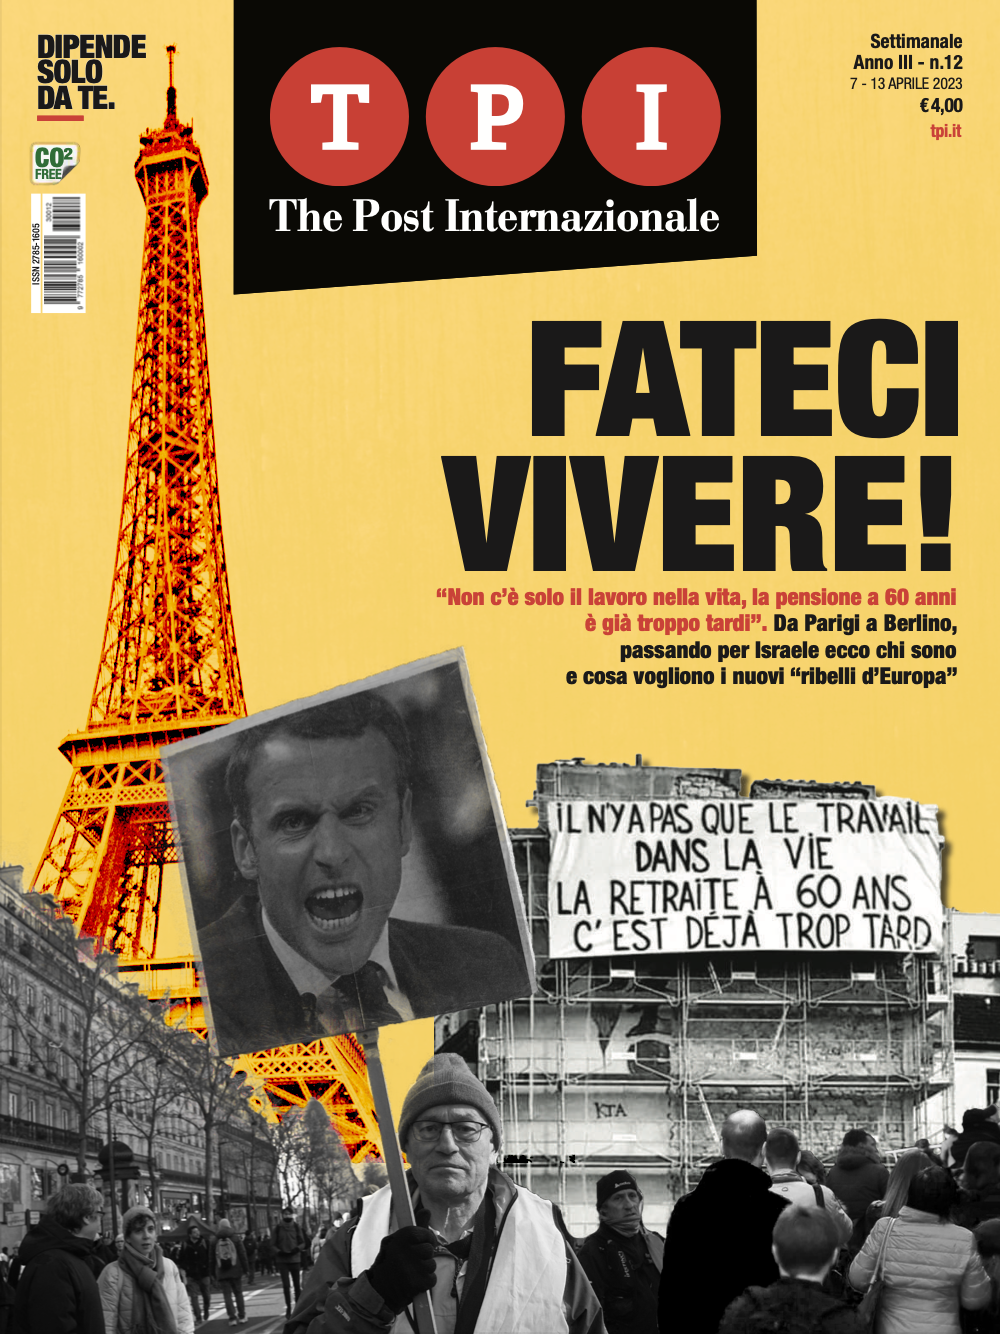 The Post Internazionale